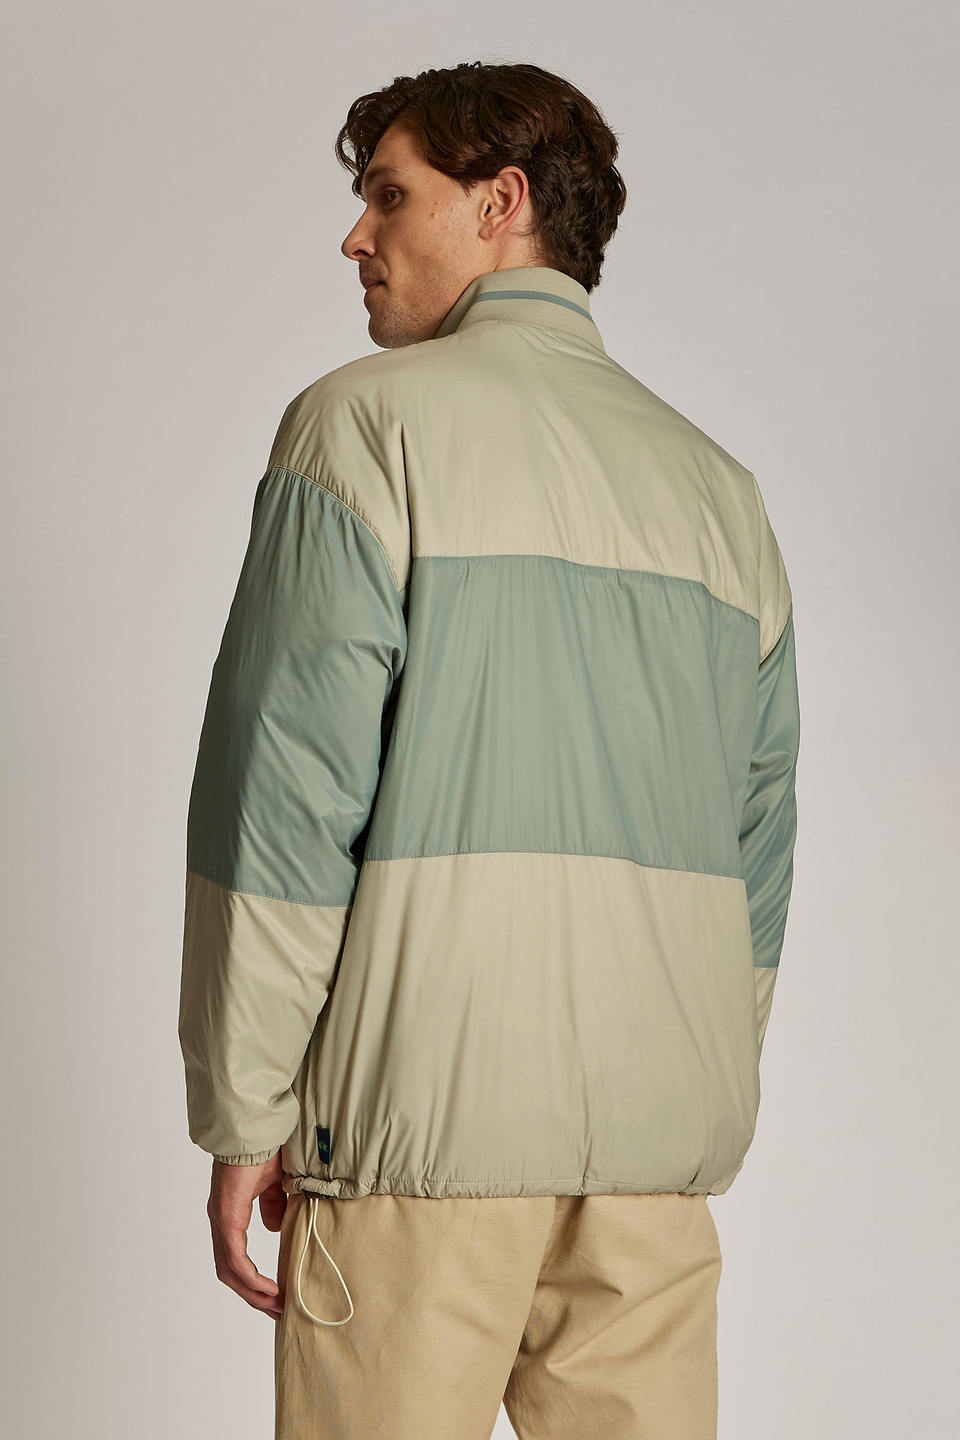 Herren-Sweatshirt aus technischem Gewebe, oversized Modell mit Band auf der Vorderseite - La Martina - Official Online Shop